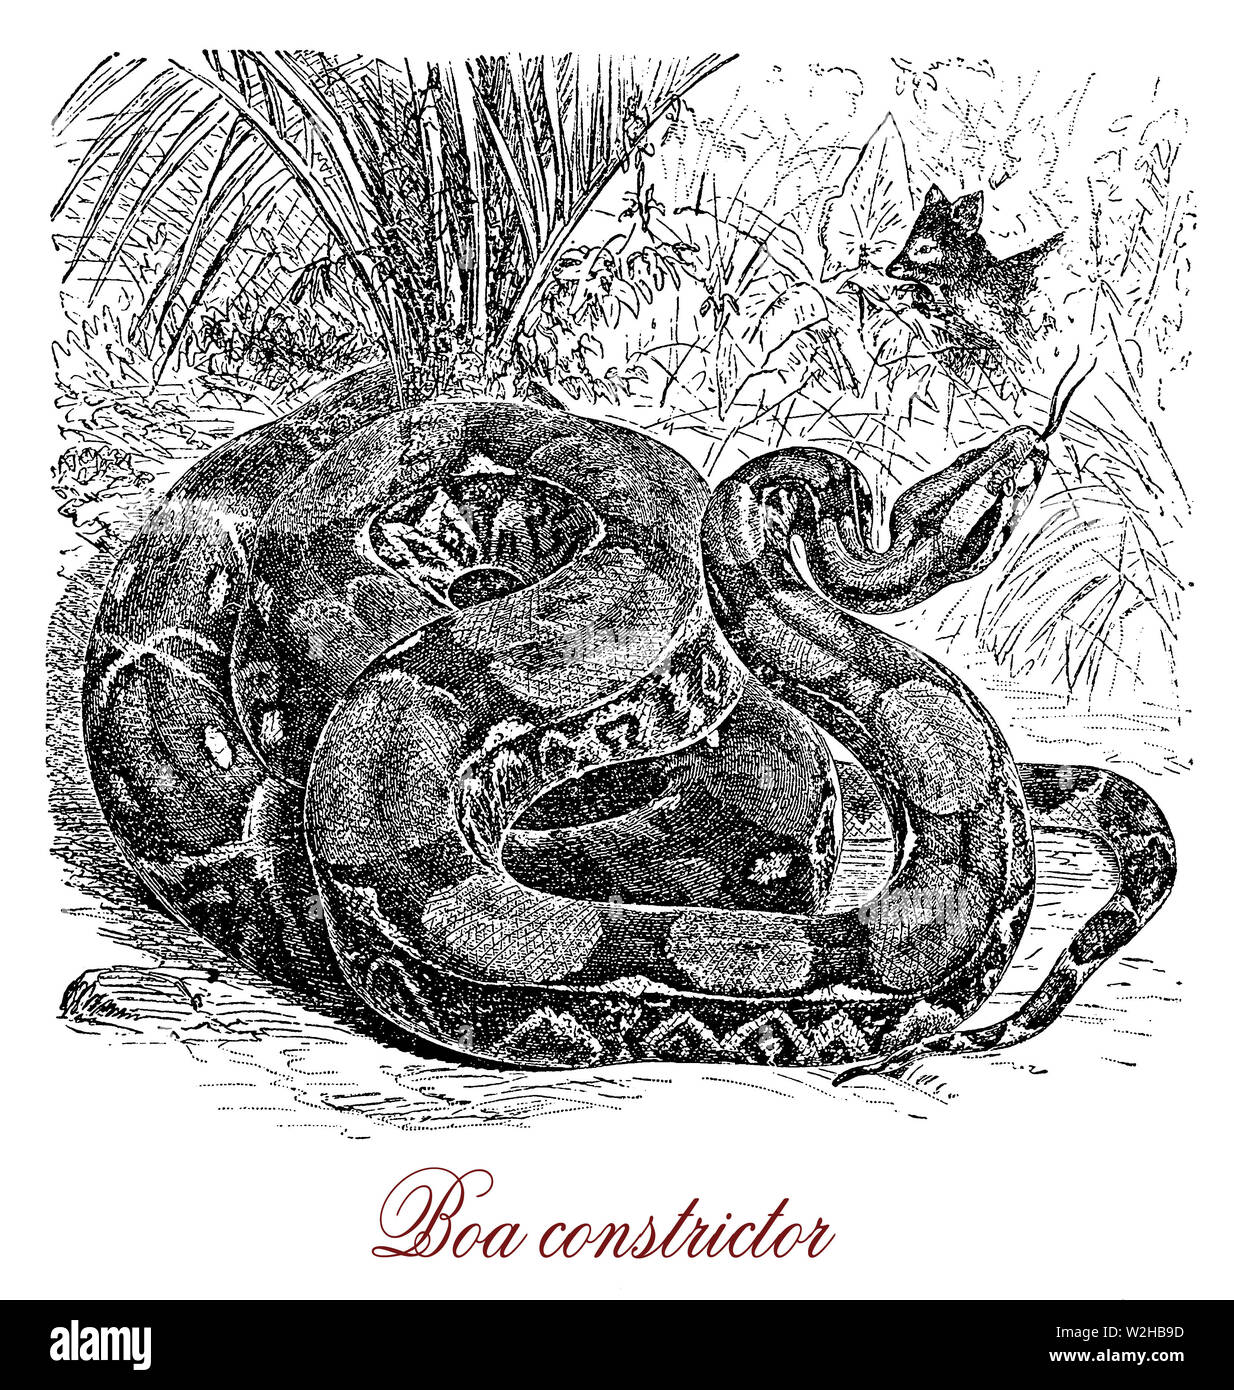 Boa constrictor ist eine große schwere nachtaktive Schlange heimisch in Amerika, Hinterhalt Predator mit Schuppen Creme und Braun, praktische Tarnung im Urwald. Stockfoto